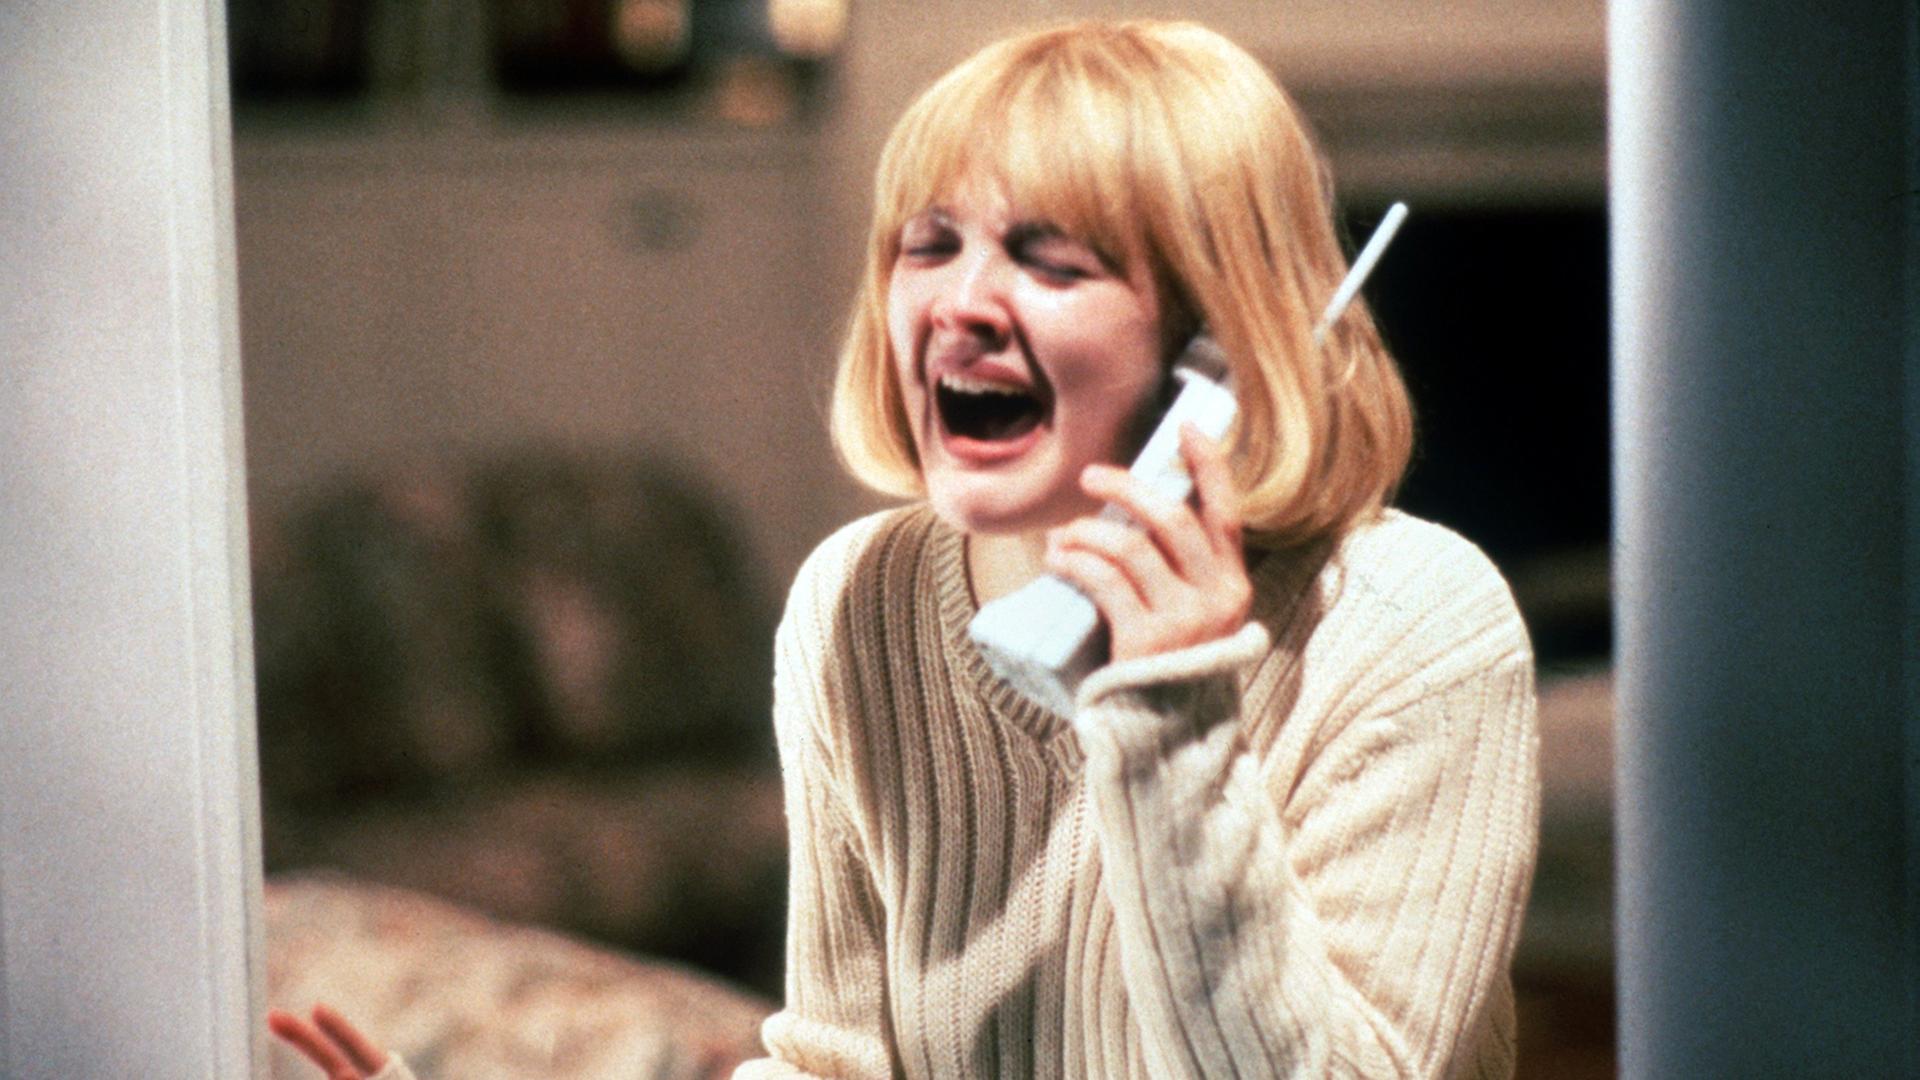 Filmstill aus "Scream" von Wes Craven mit Drew Barrymore als Casey, verzweifelt am Telefon, wo ihr Mörder sie terrorisiert.